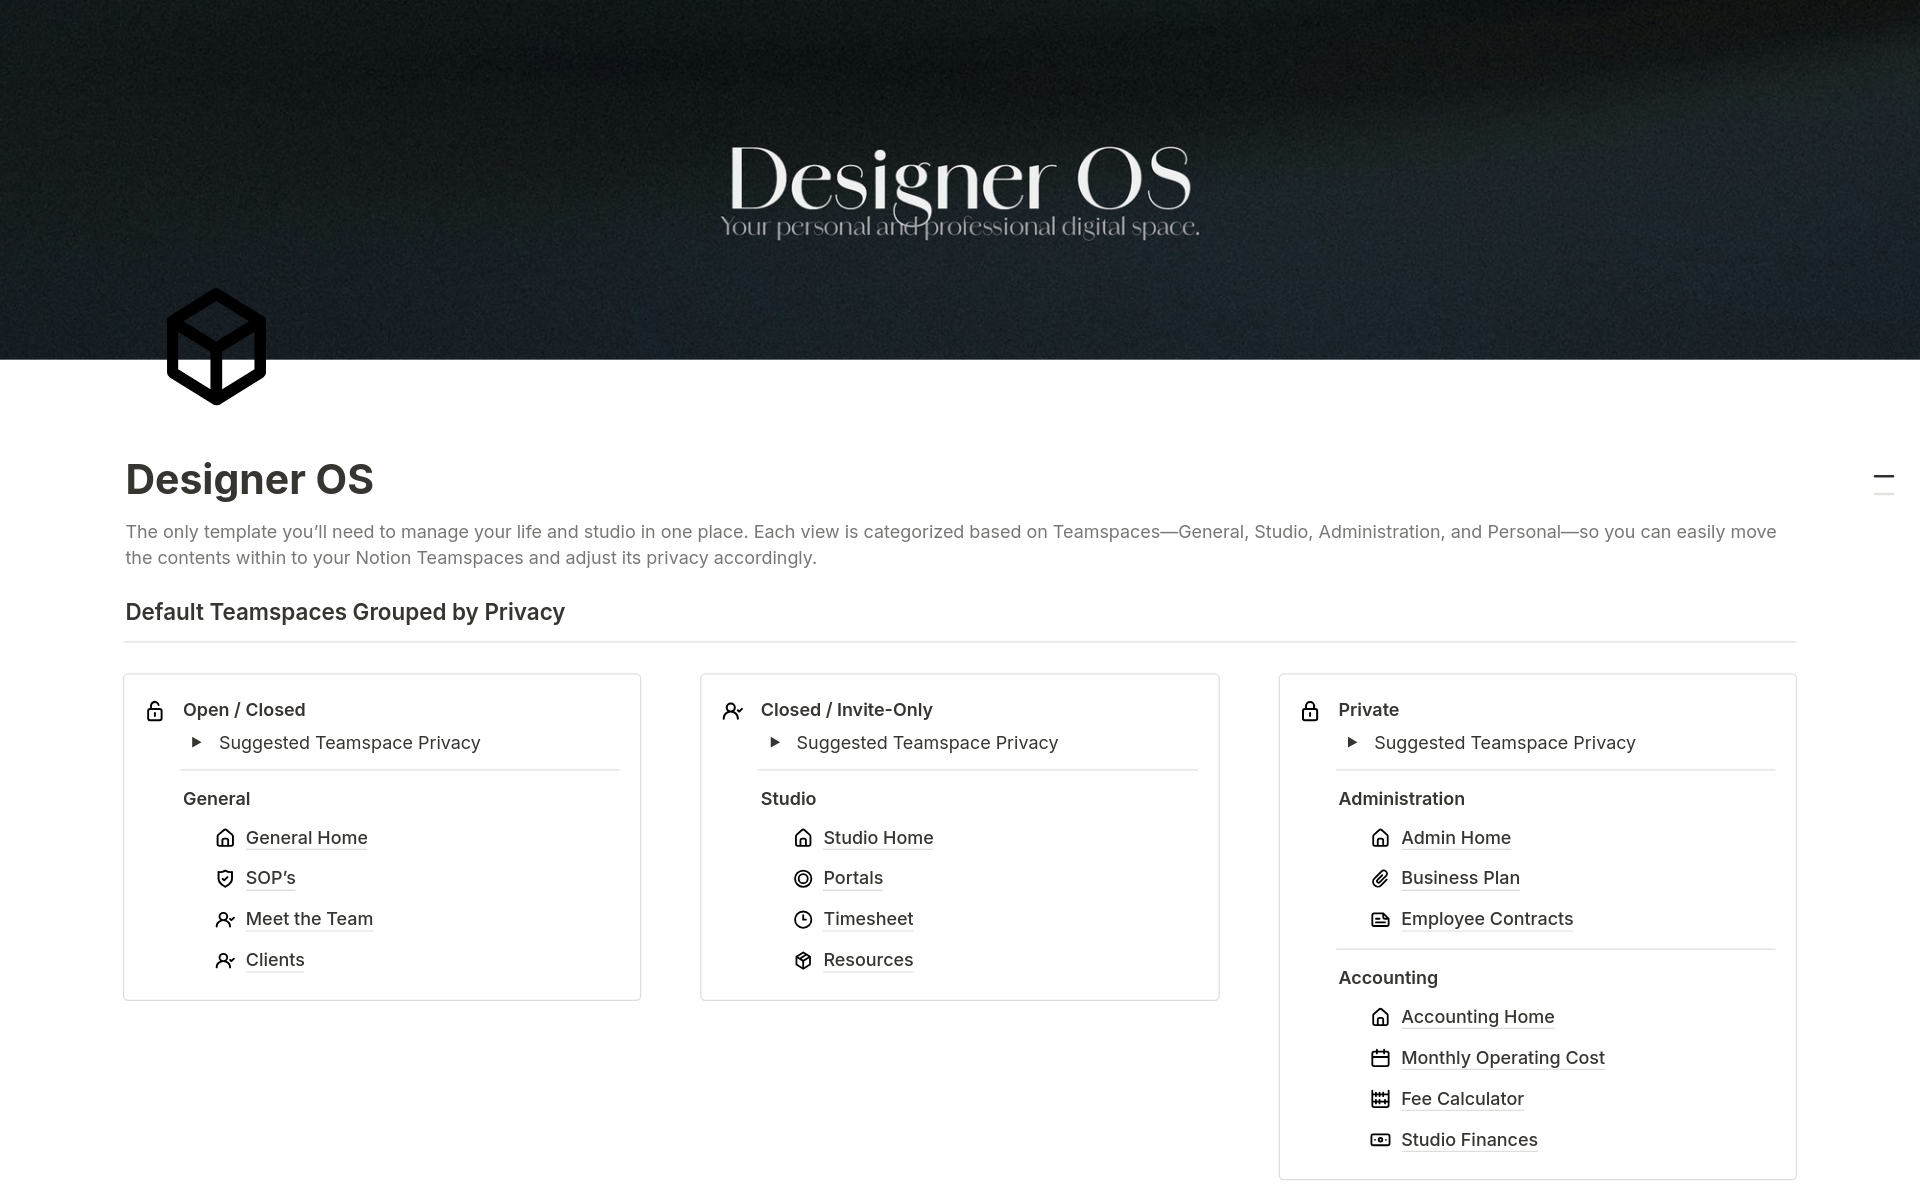 Vista previa de una plantilla para Designer OS